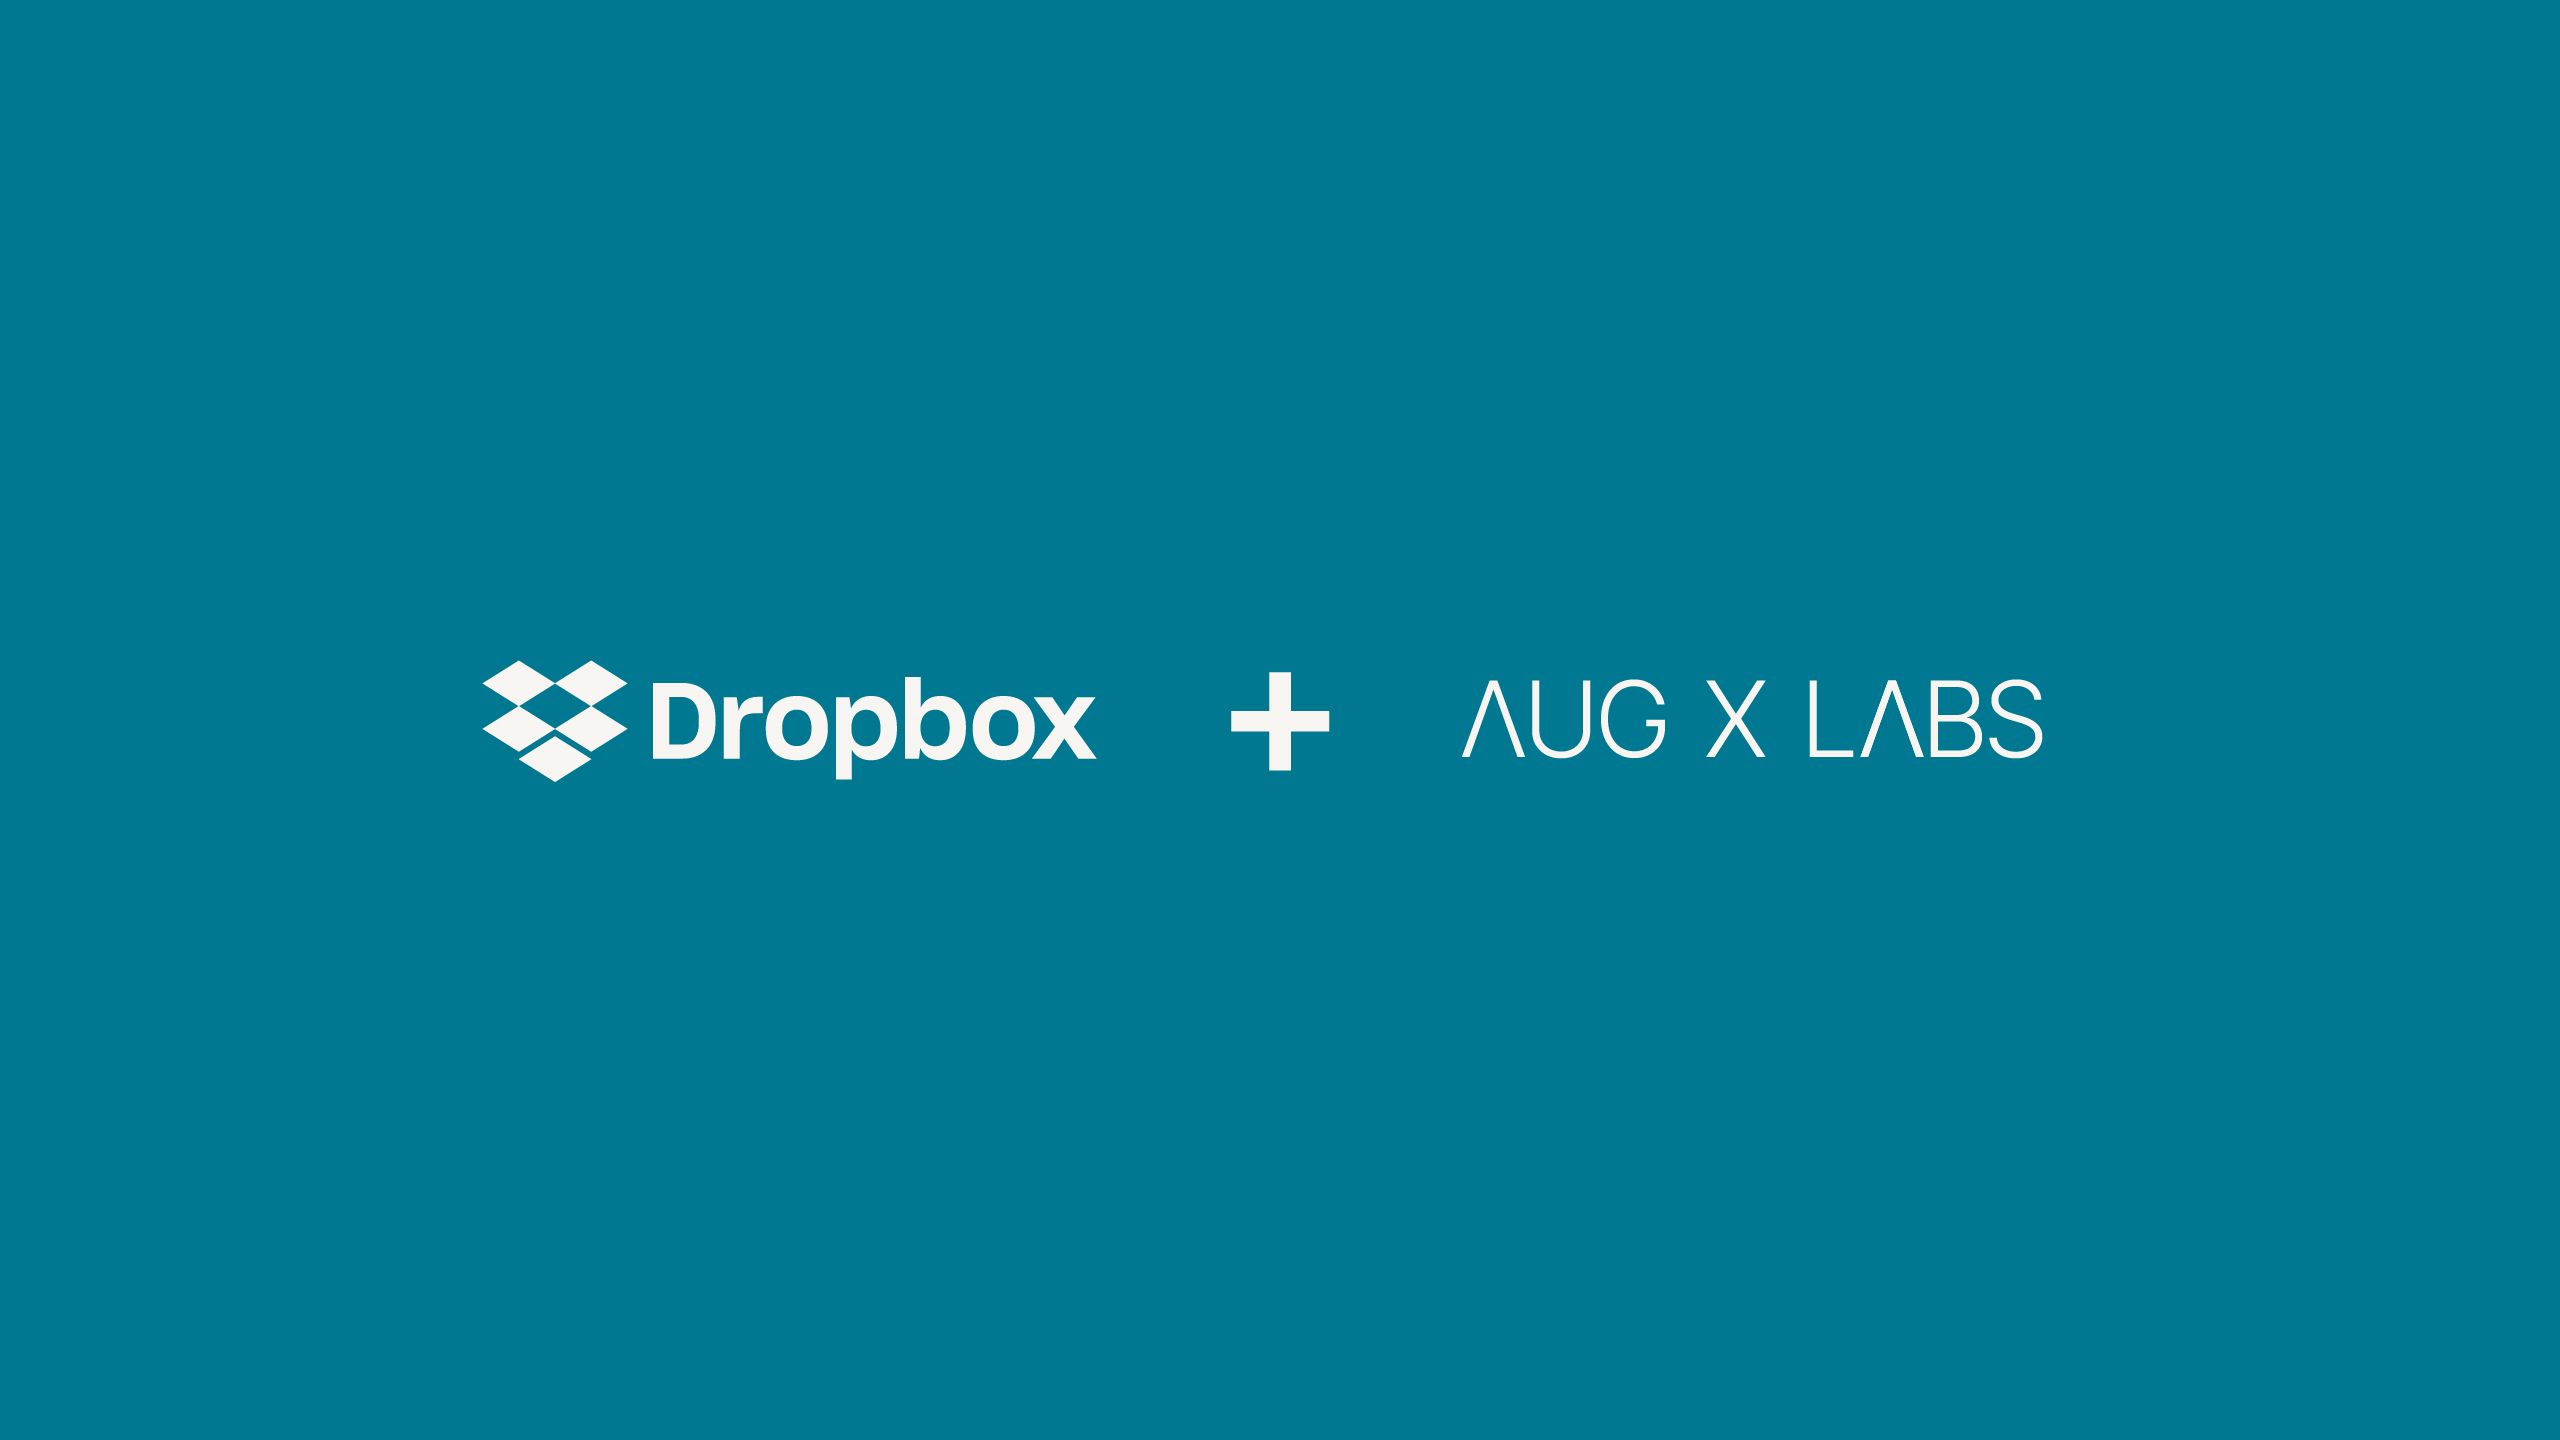 Logo da parceria do Dropbox e do AubX Labs  